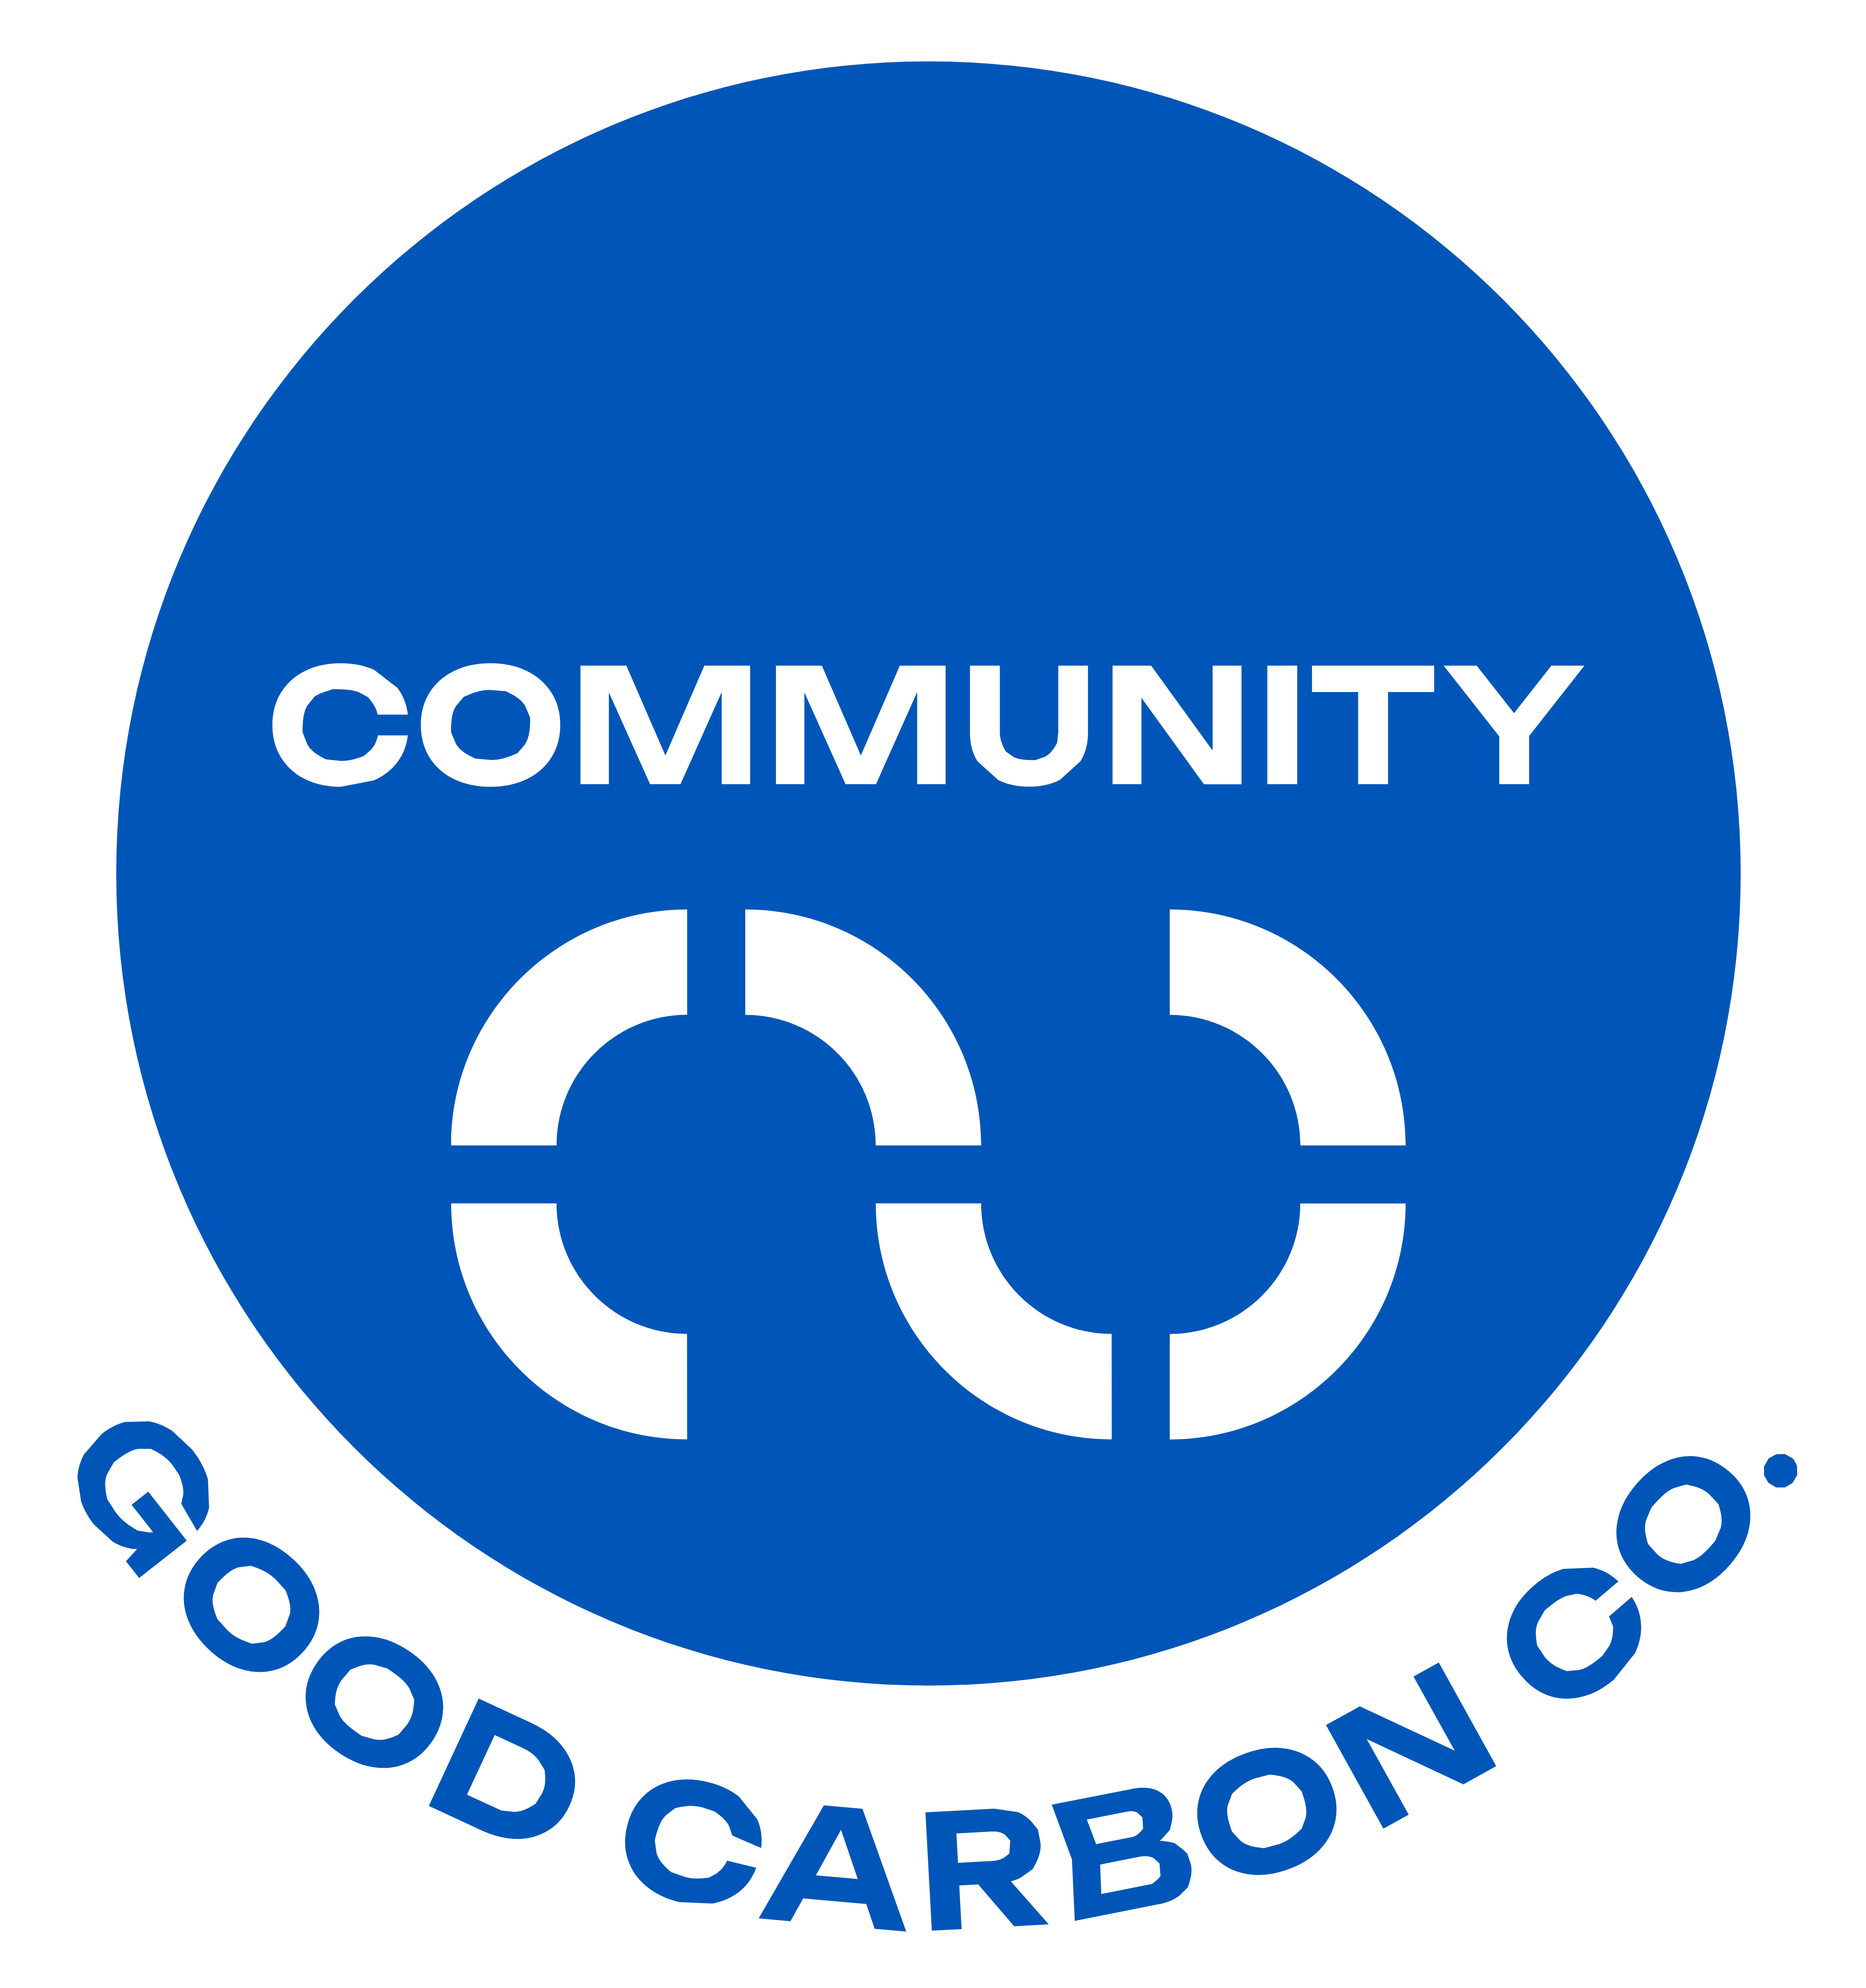 Live Good Carbon Co.